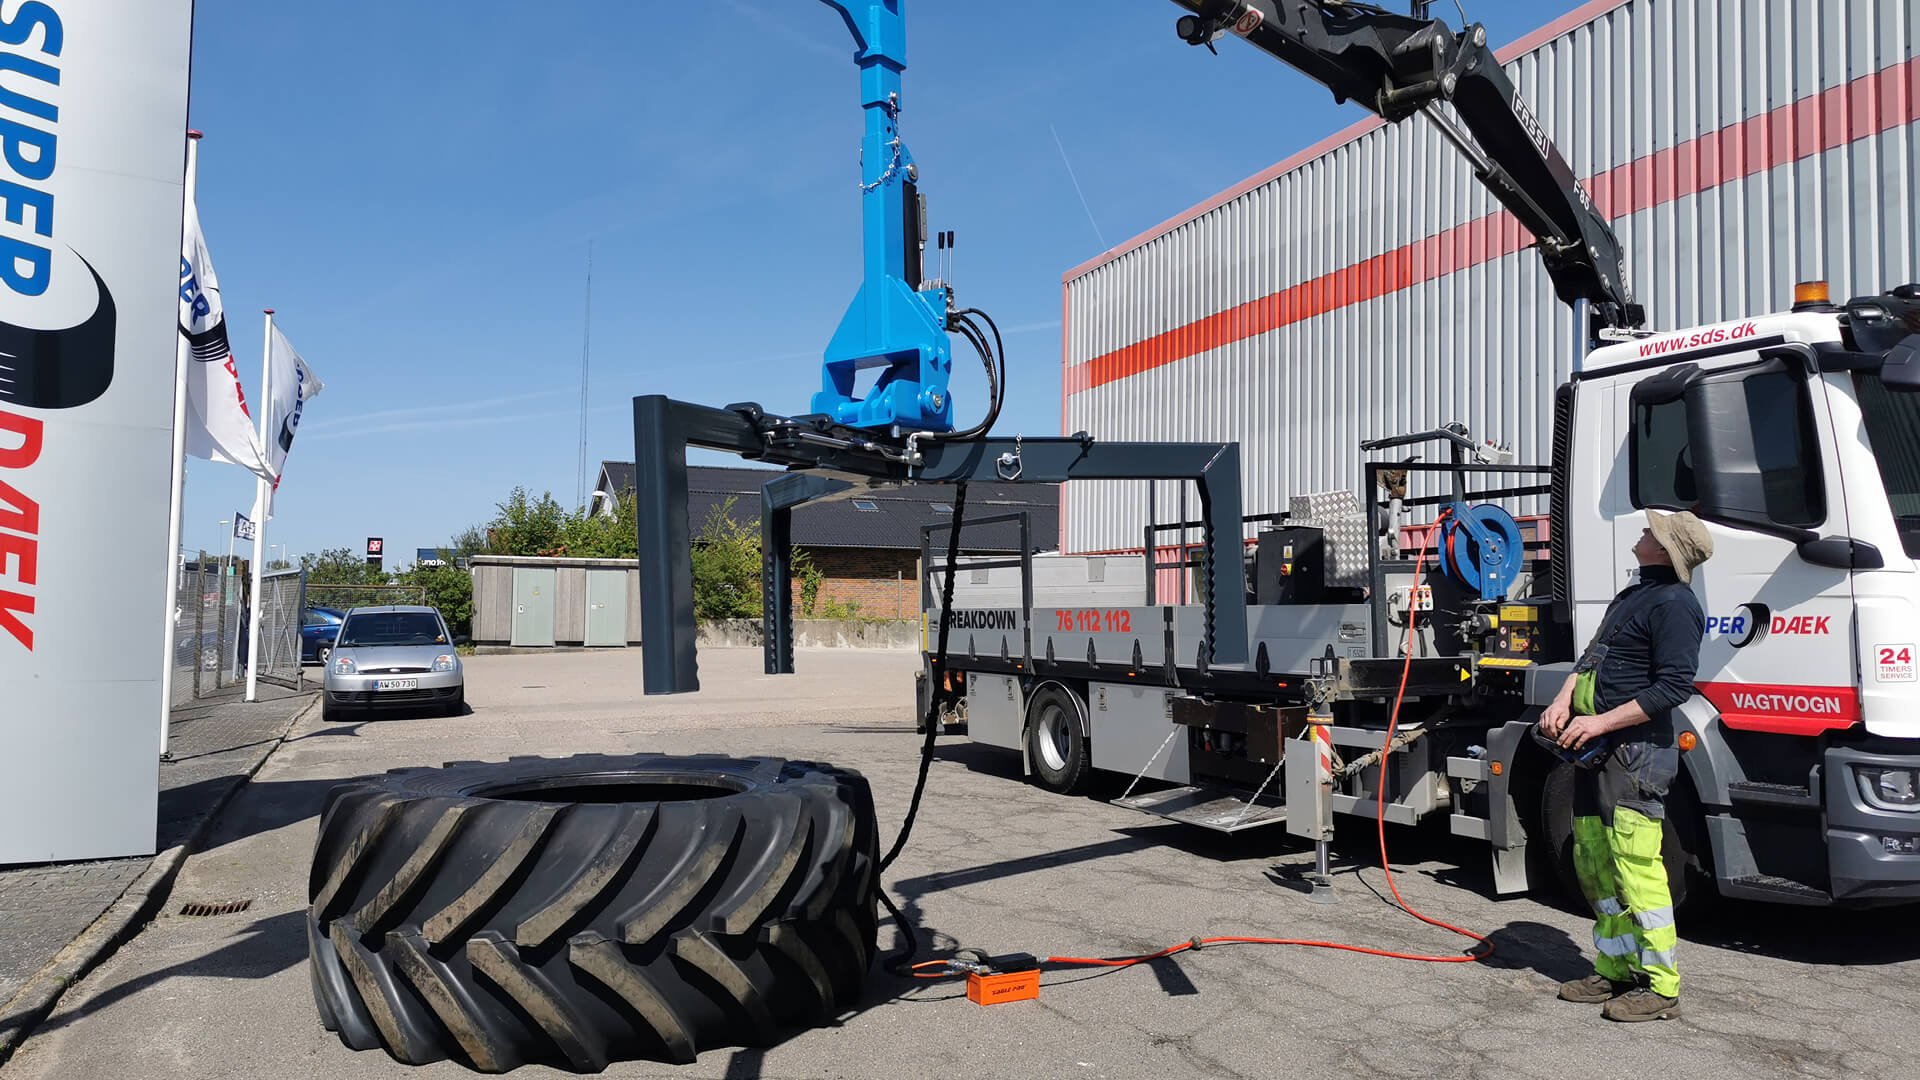 Easy Gripper Crane makes mobile OTR tyre service easy